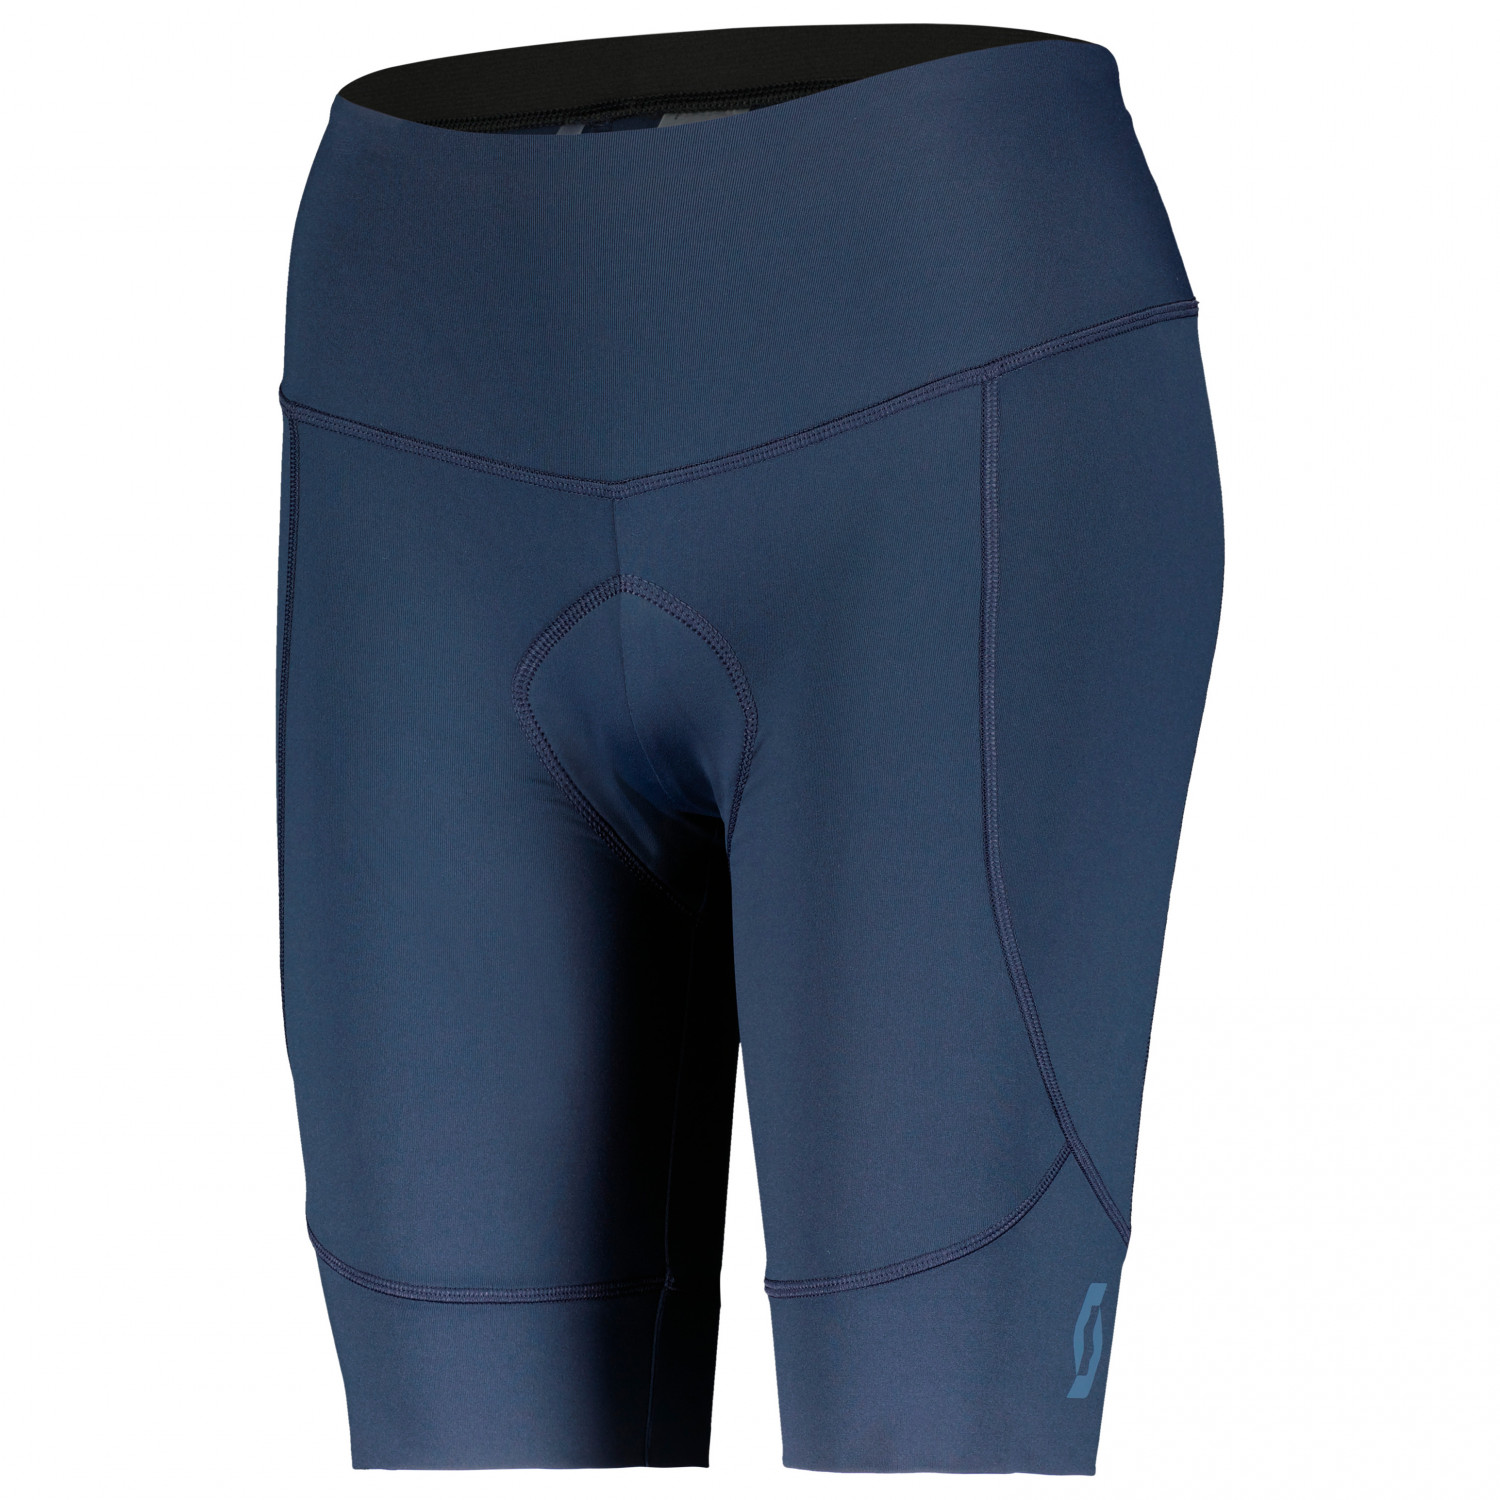 Велосипедные шорты Scott Women's Shorts Endurance 10 +++, цвет Dark Blue/Metal Blue спортивные шорты endurance цвет blue mirage